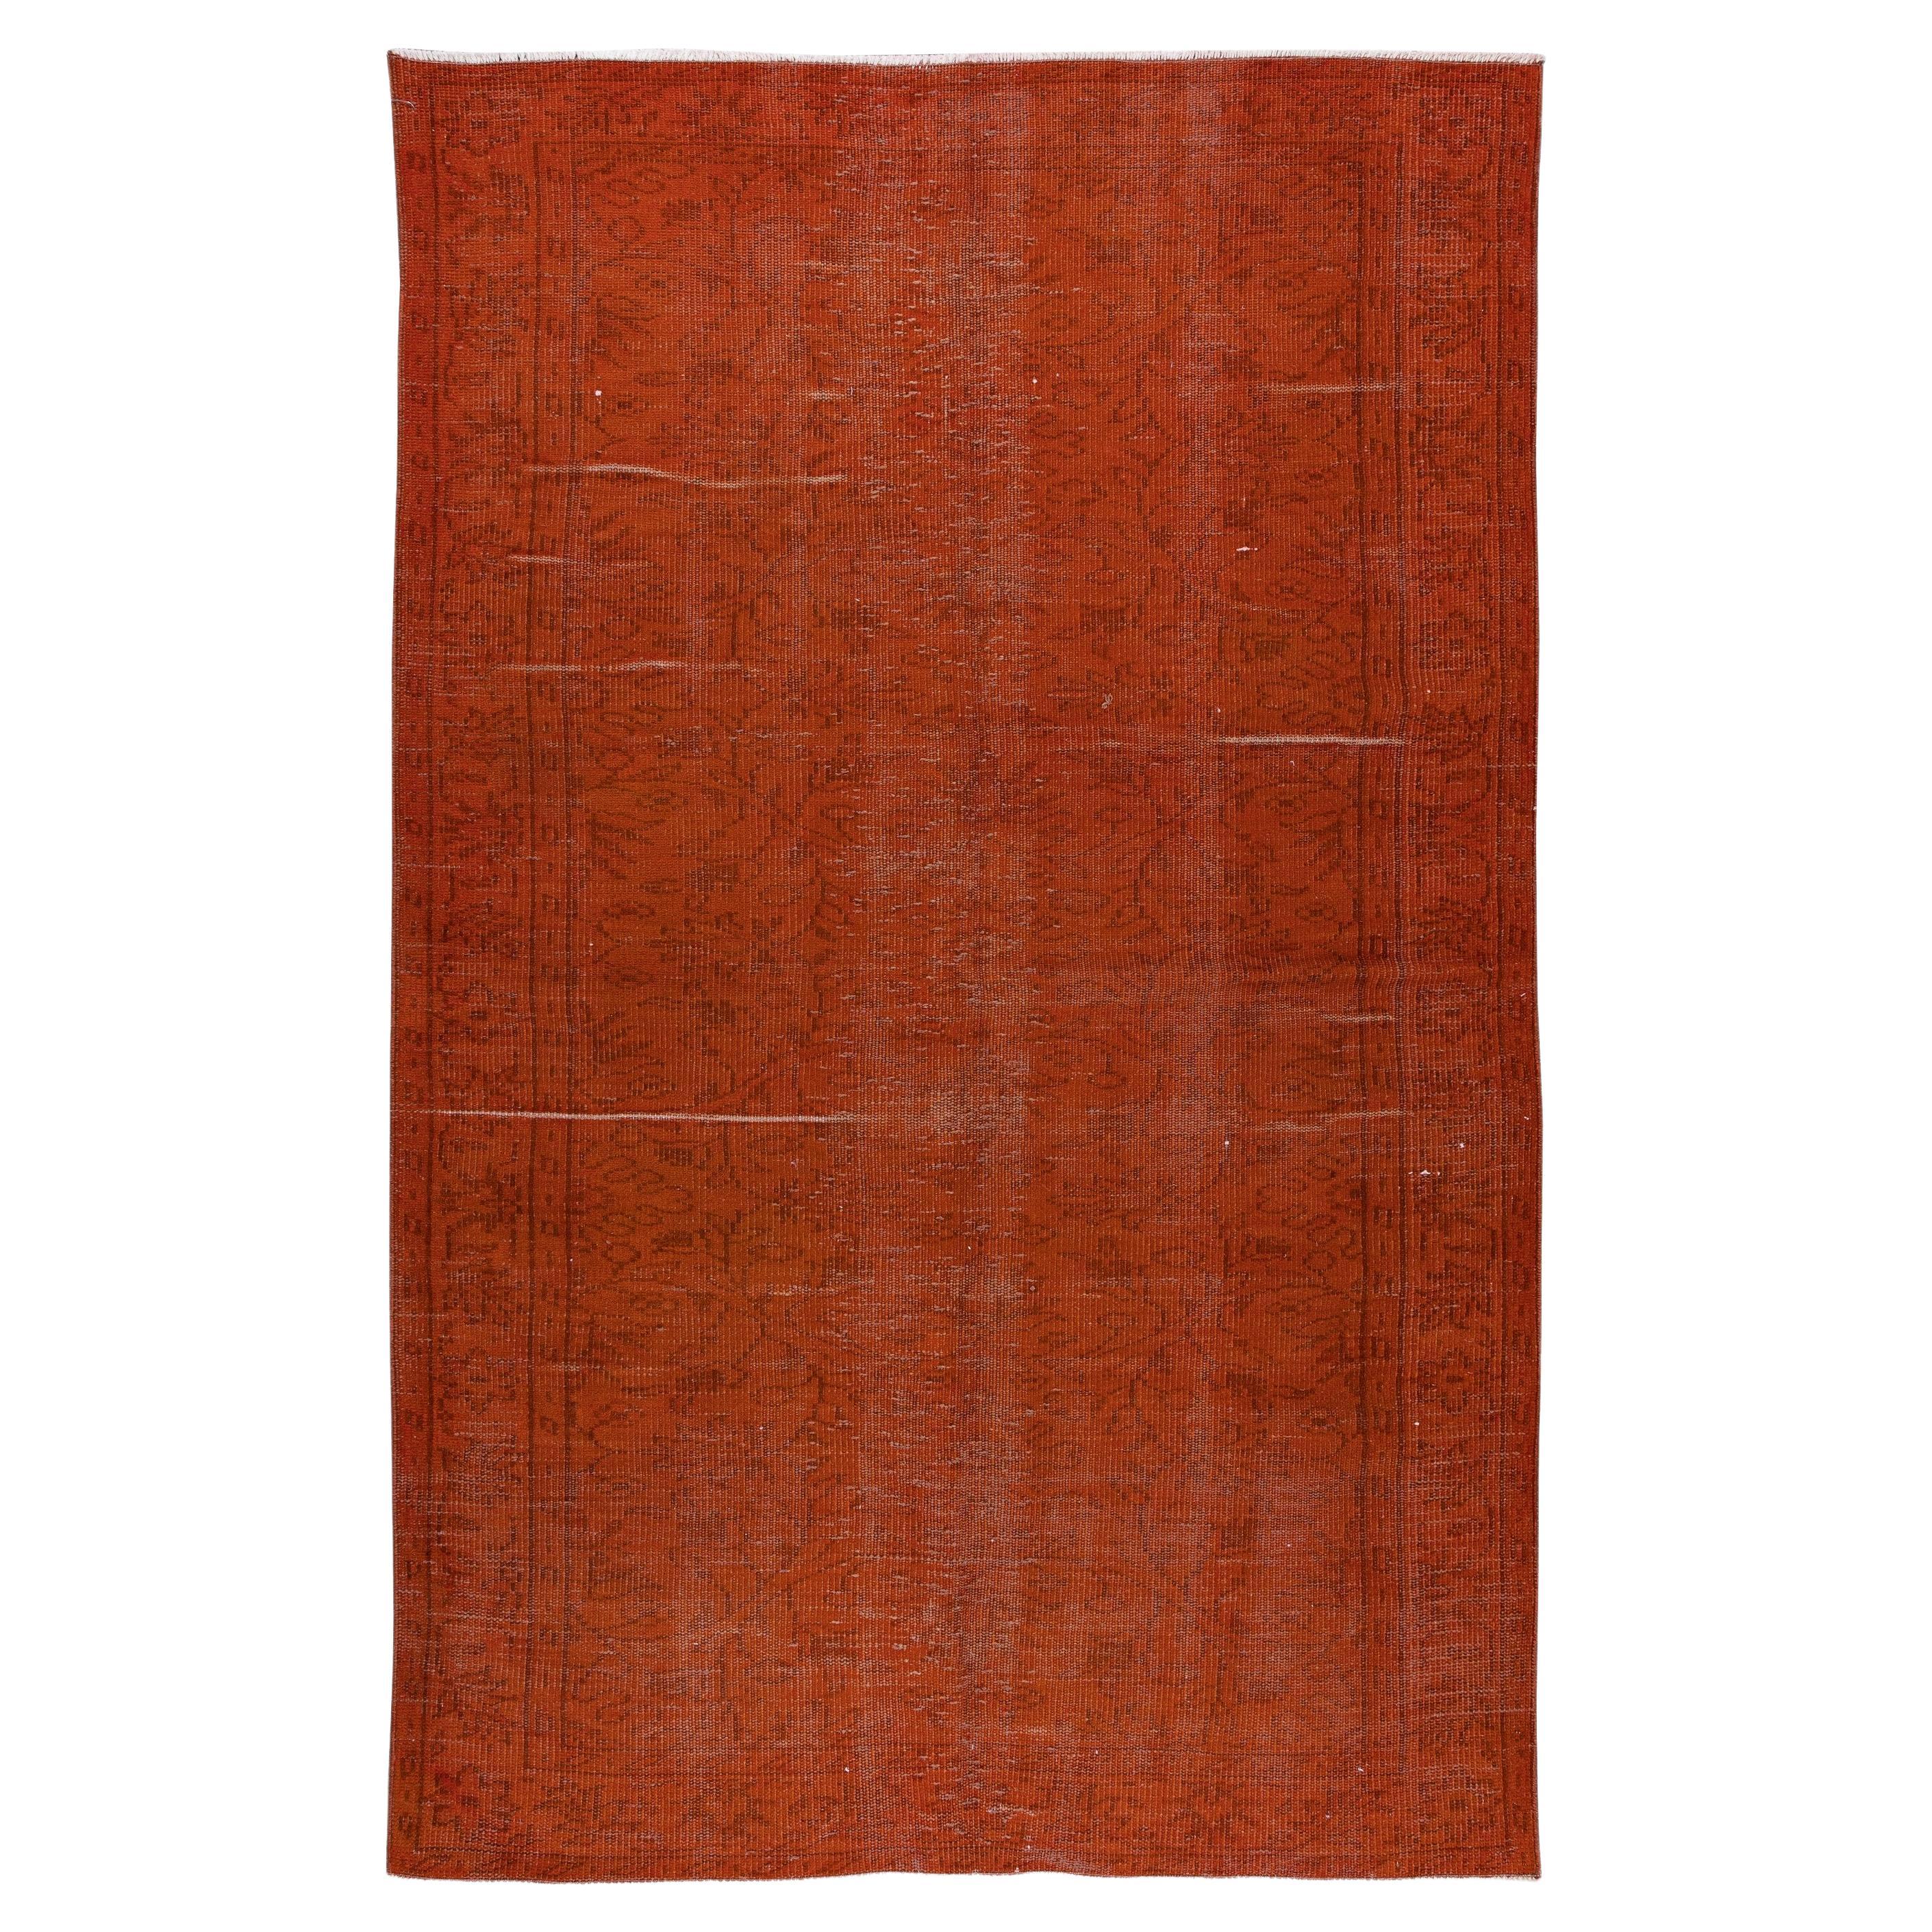 5.2x8.2 Ft Hand geknüpft Türkisch Teppich Over-Dyed in Orange Zeitgenössische Interieurs